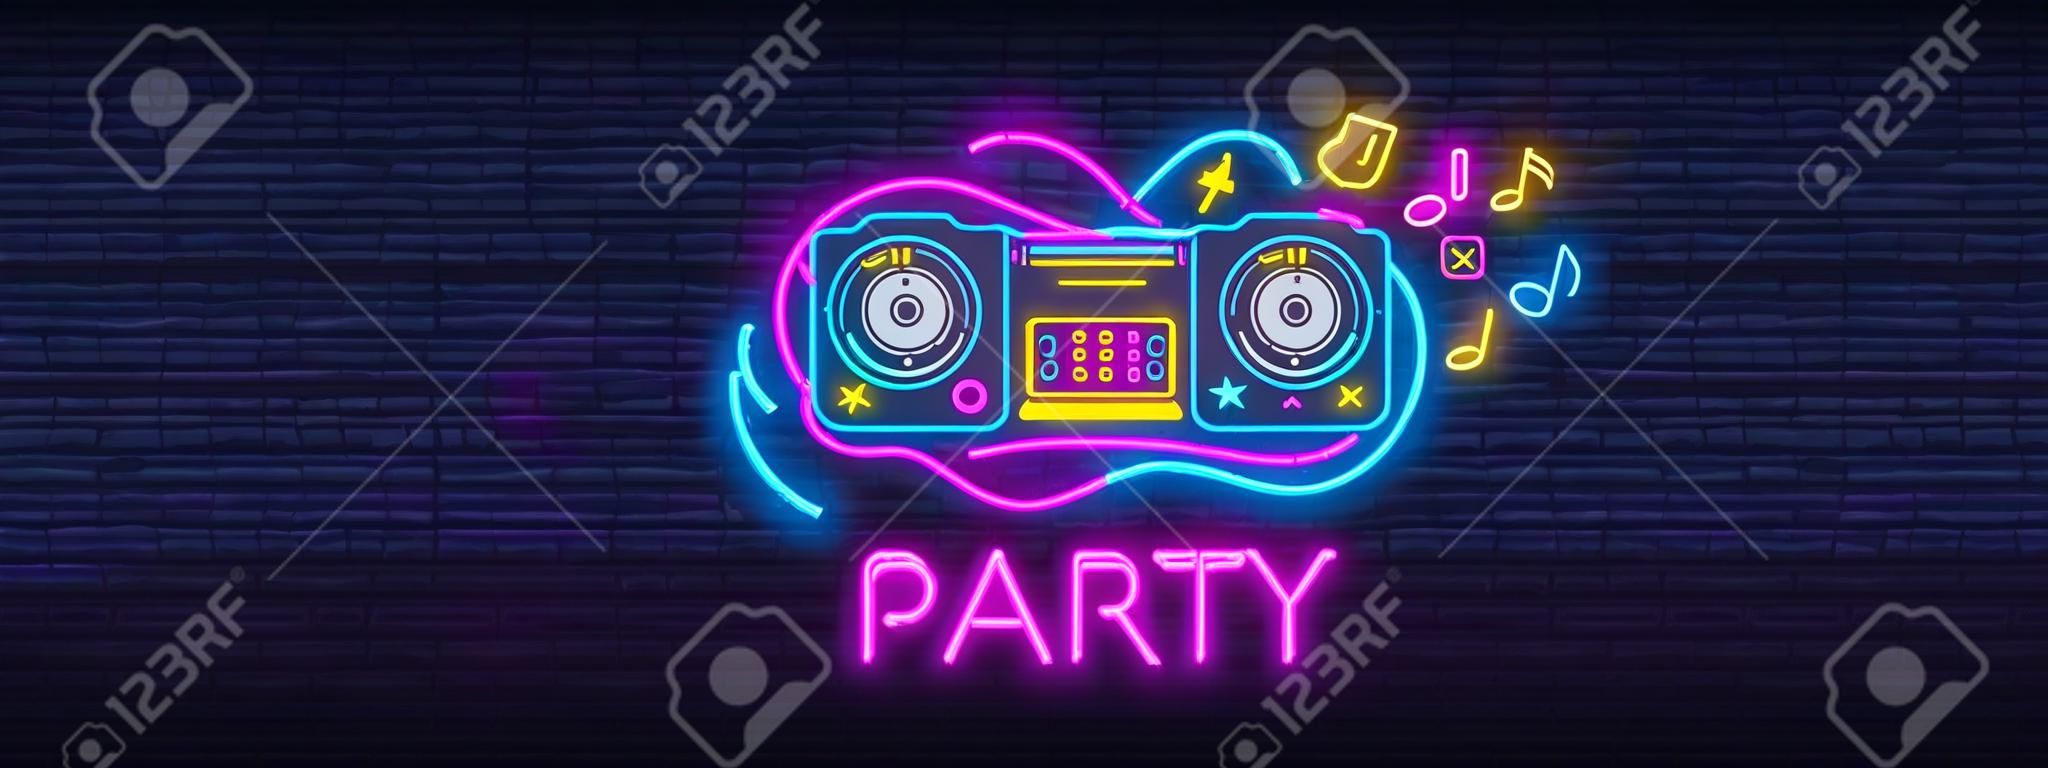 DJ Music Party neonowy znak kolekcji wektor szablon projektu. DJ Koncepcja muzyki, radia i koncertu na żywo, neonowy plakat, lekki element projektu banera, kolorowa, nocna jasna reklama. Wektor